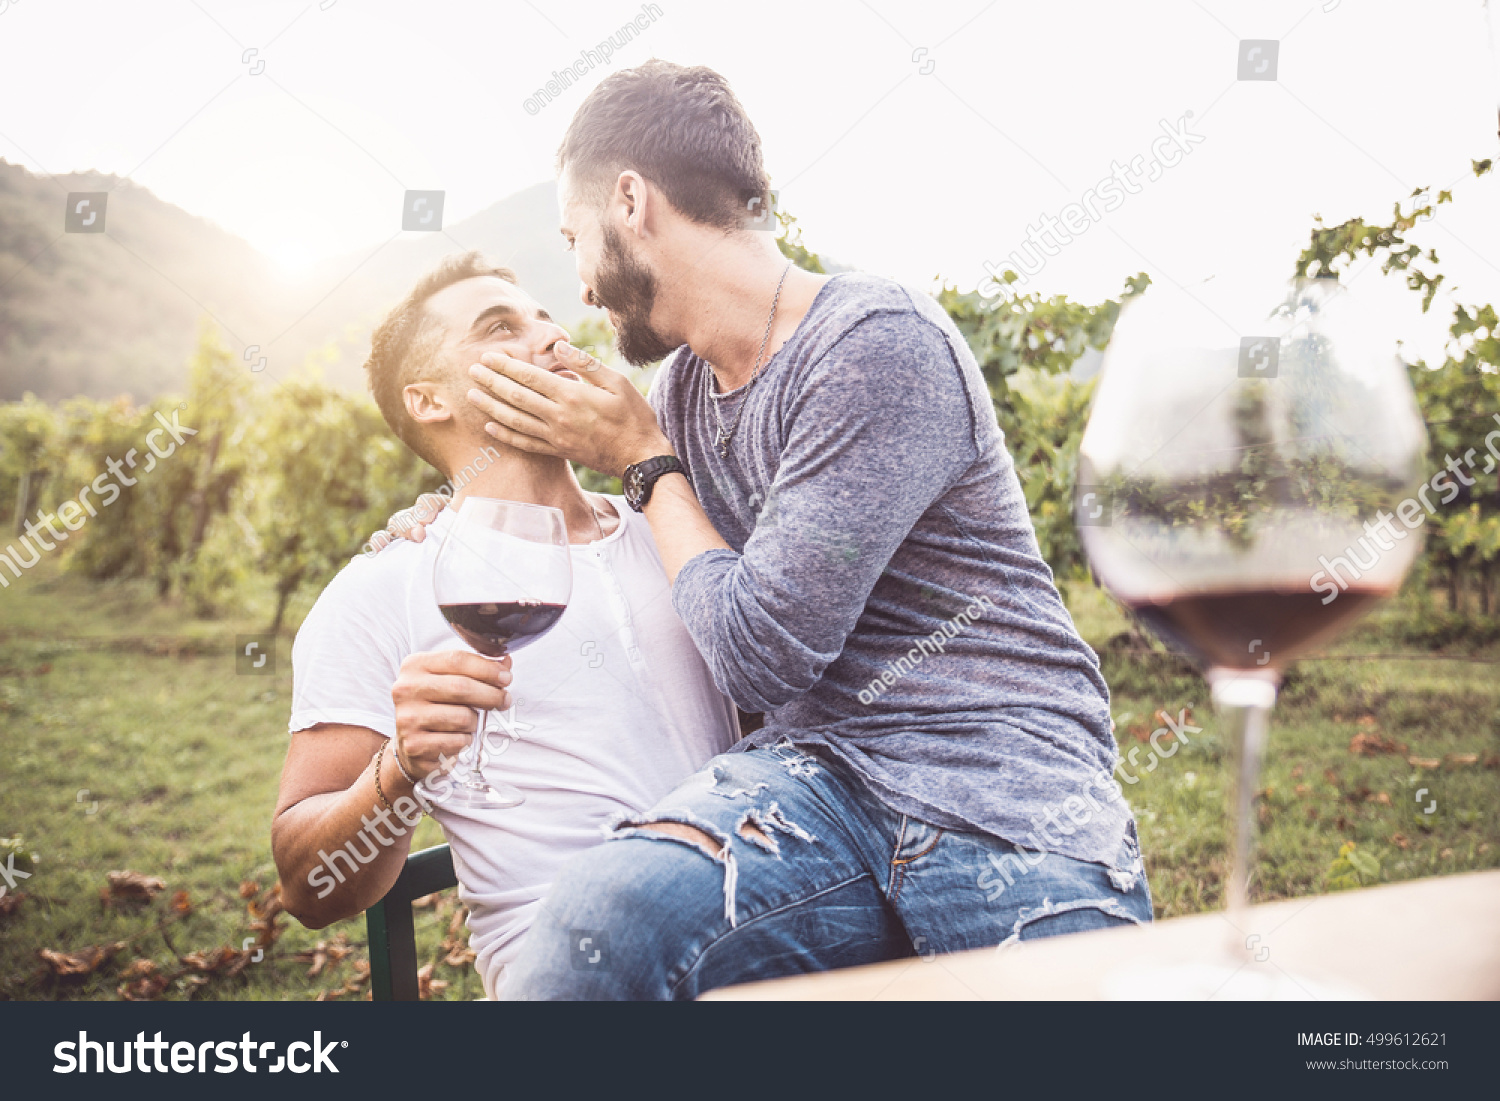 ロマンチックなデートでゲイ同士のカップル 楽しいワインと飲むワイン 同性愛者とのキス の写真素材 今すぐ編集 499612621